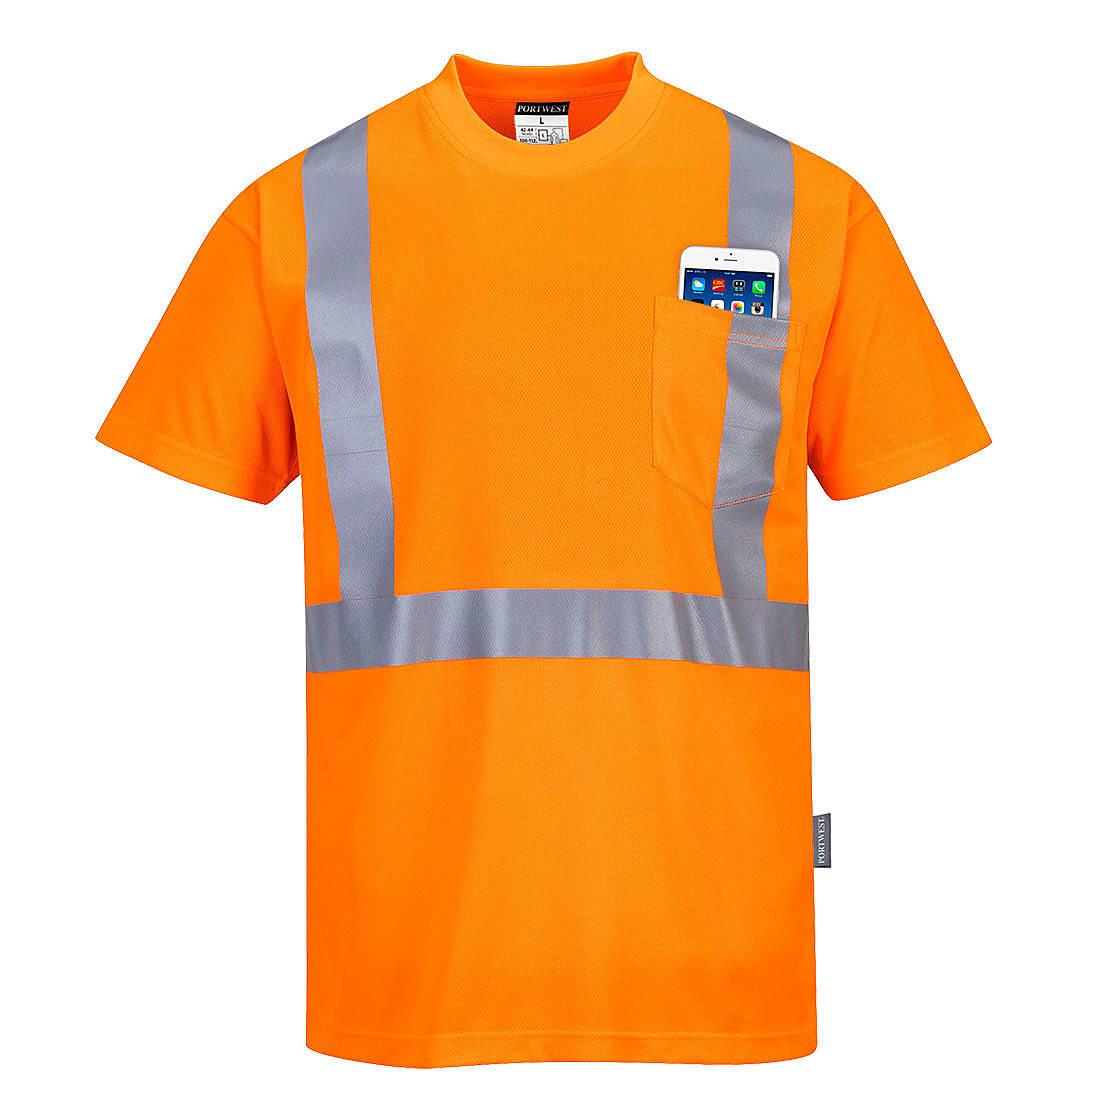 Portwest Hi-Viz Pocket T-Shirt in Orange (Product Code: S190)